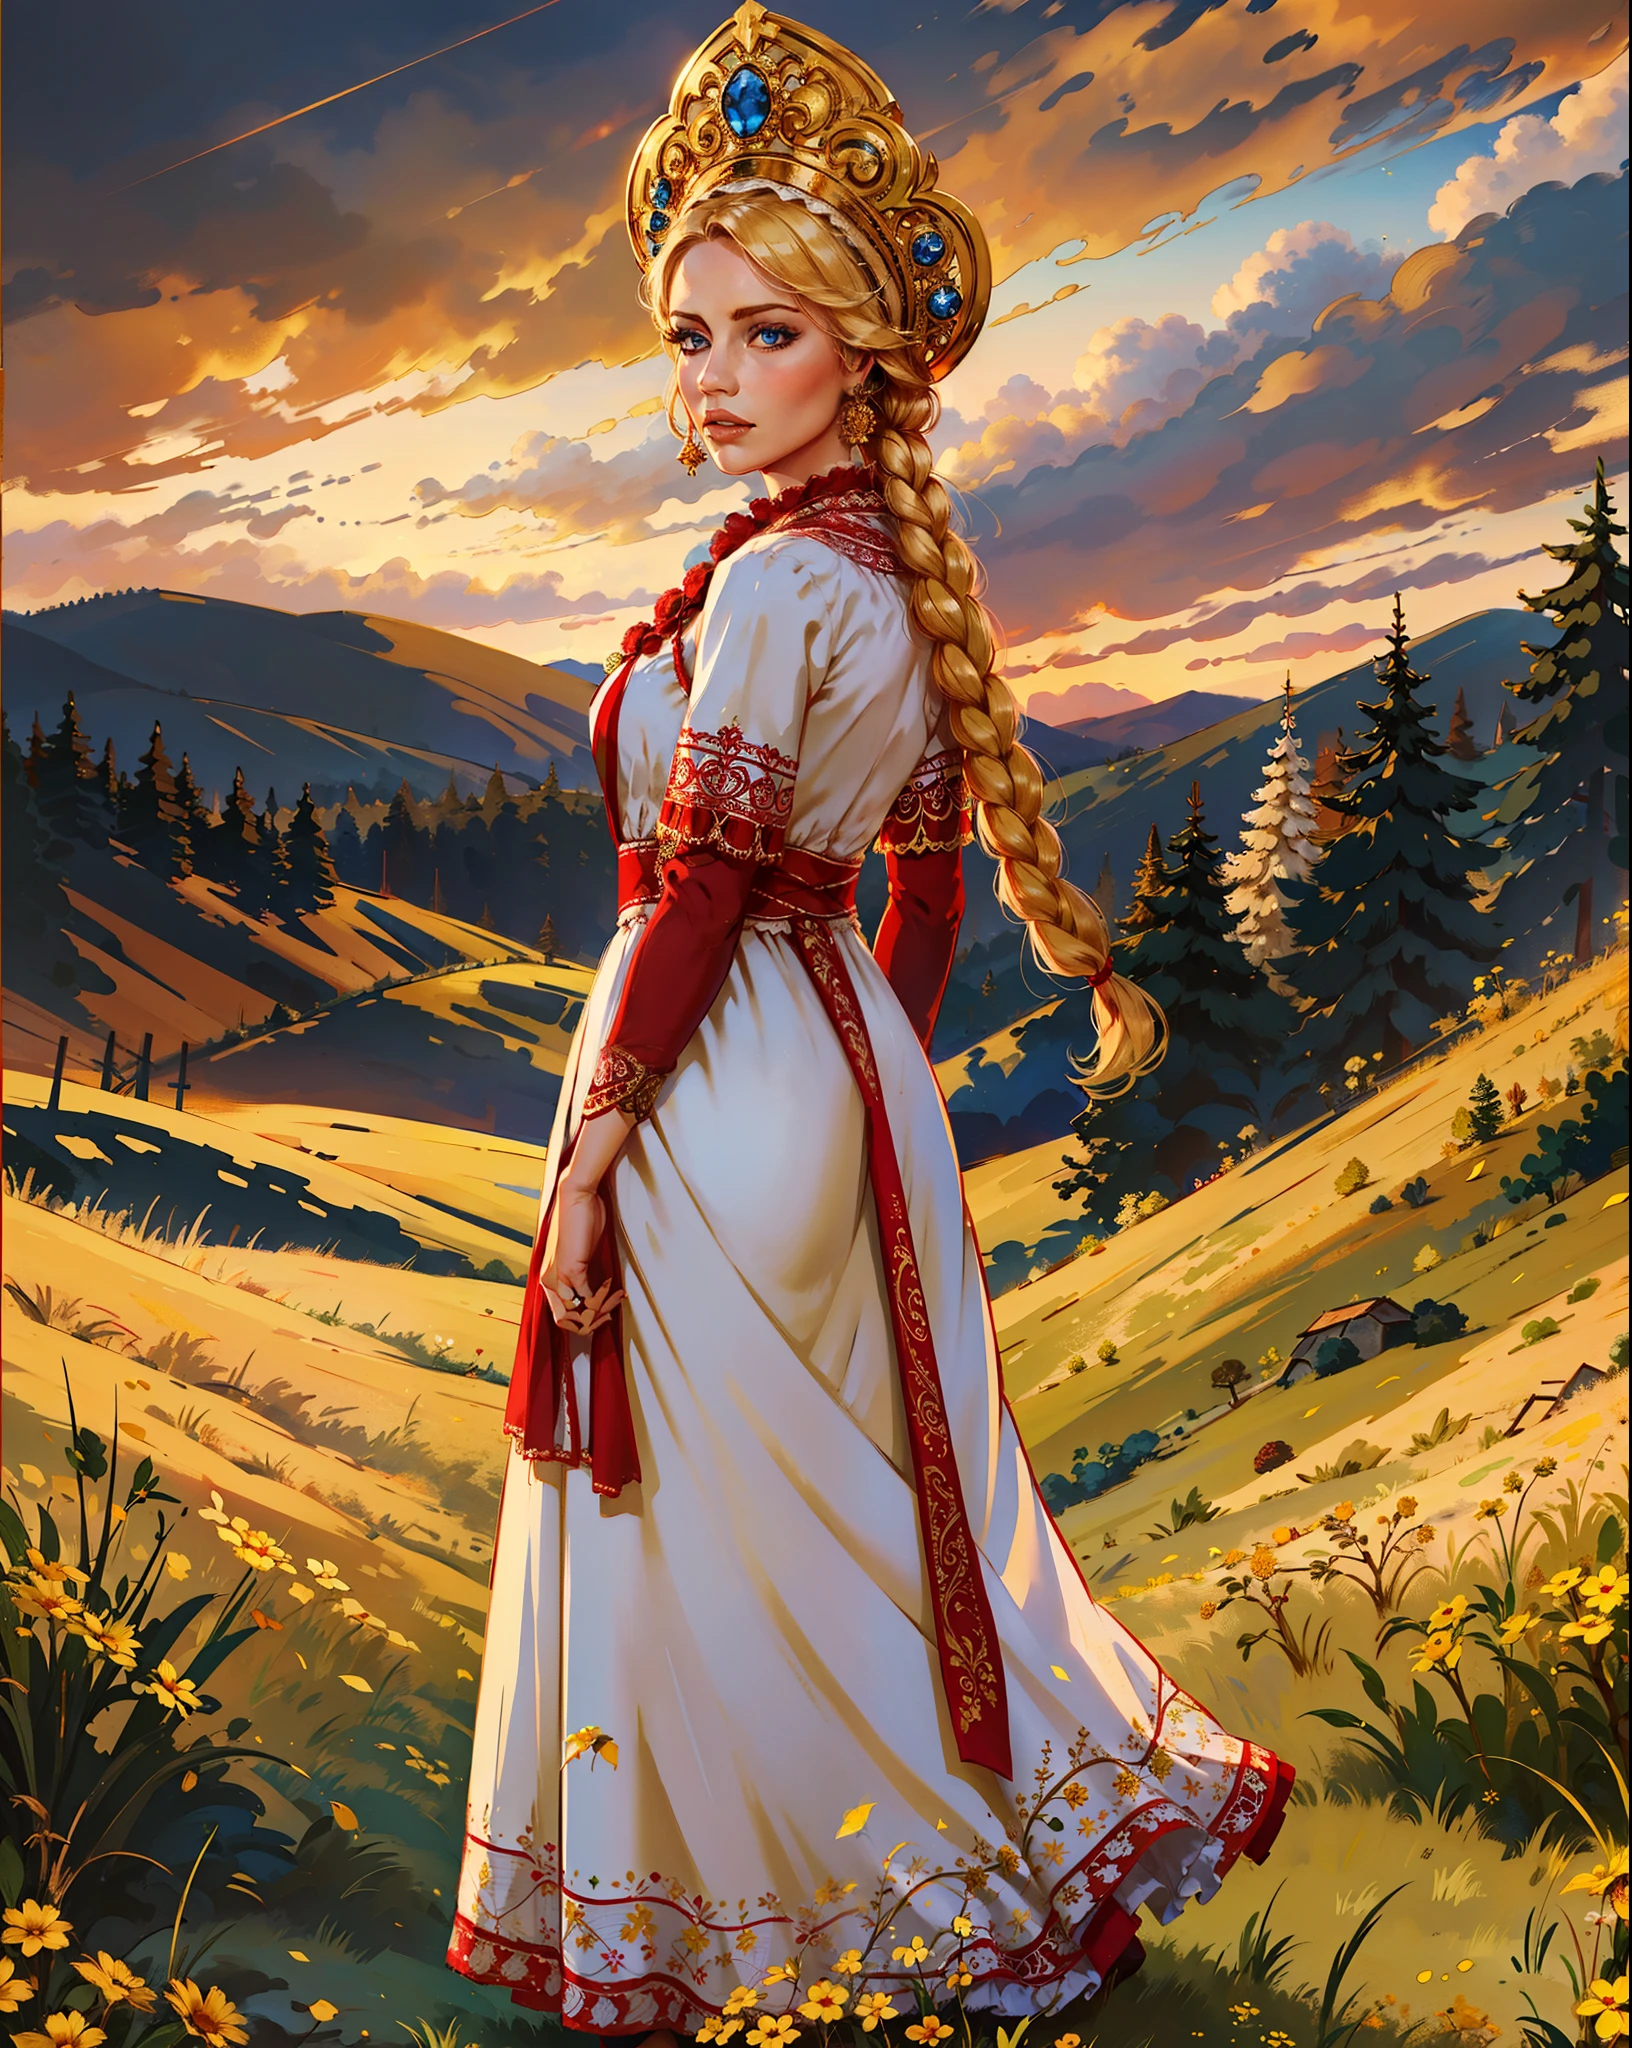 1人の女の子, 華やかな赤いフリルが付いた白いドレスを着た美しい金髪の女性の全身, 腕を背中の後ろに置く, 青い目, 編み込み, ココシュニックの帽子, 黄色のフィールド, 暗く深い青空, 夕方